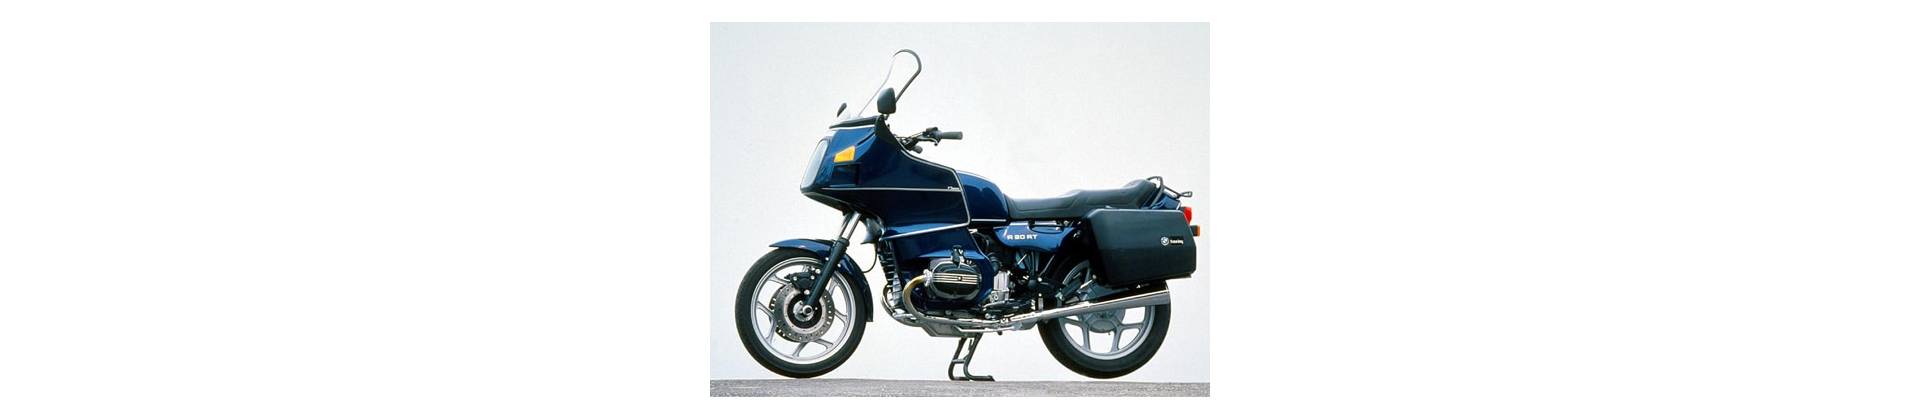 R80RT 1986-1995